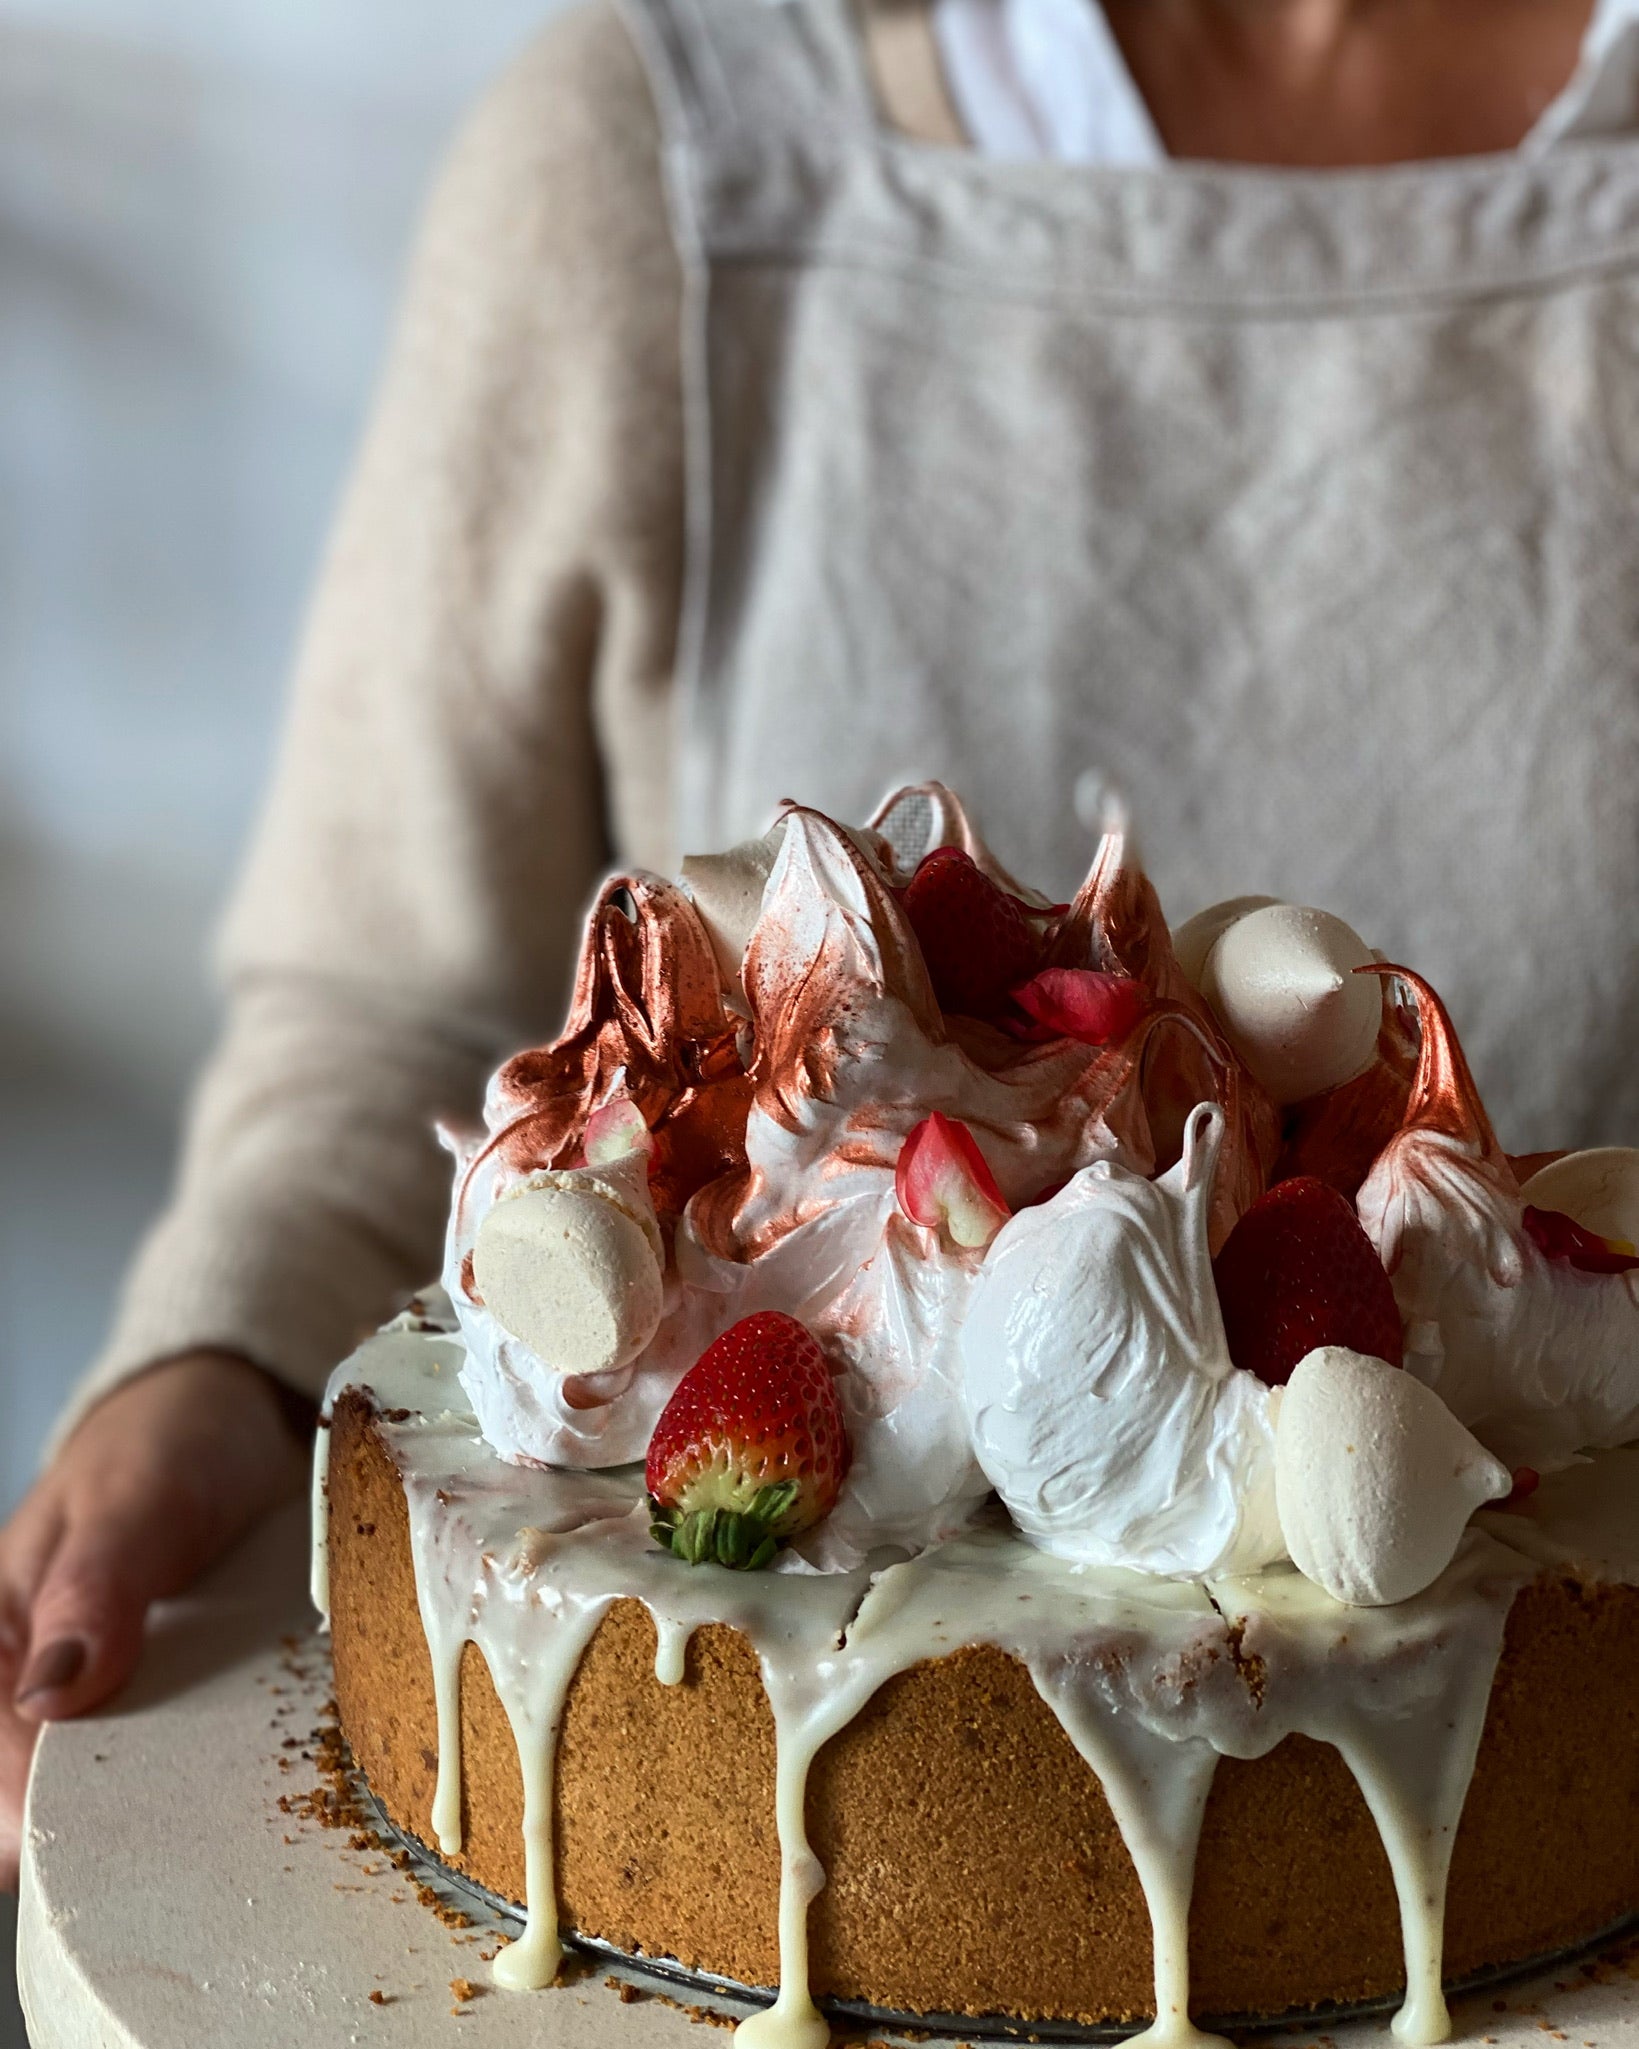 Strawberry + White Chocolate cheesecake